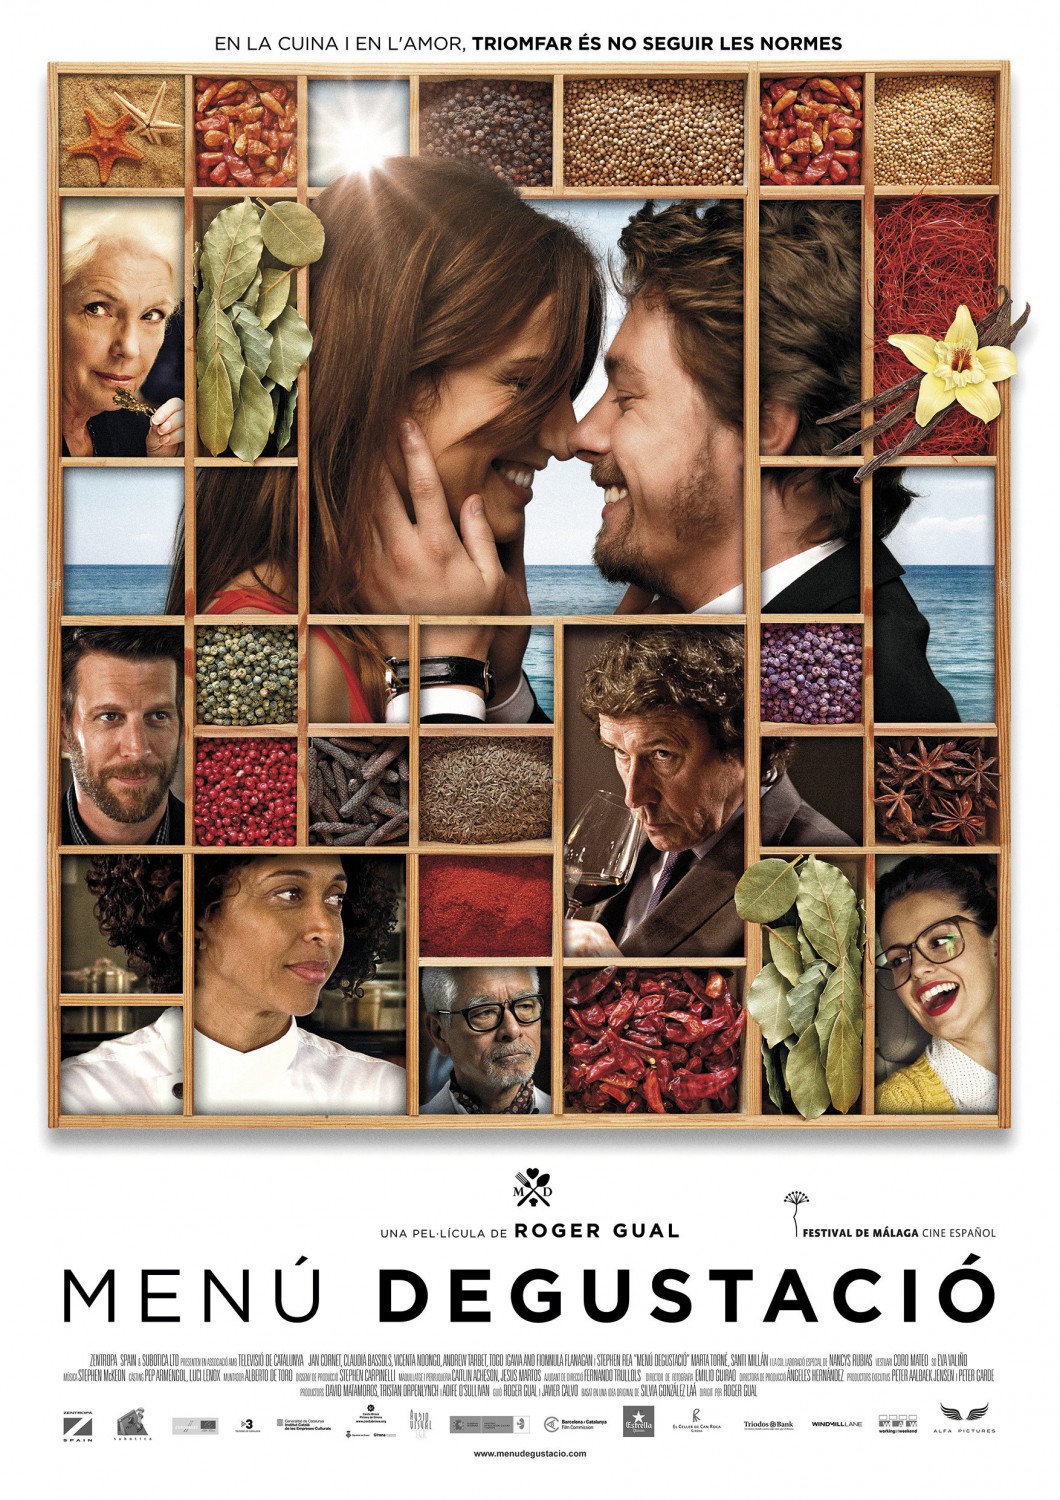 The Menu Movie Poster (#2 of 3) - IMP Awards